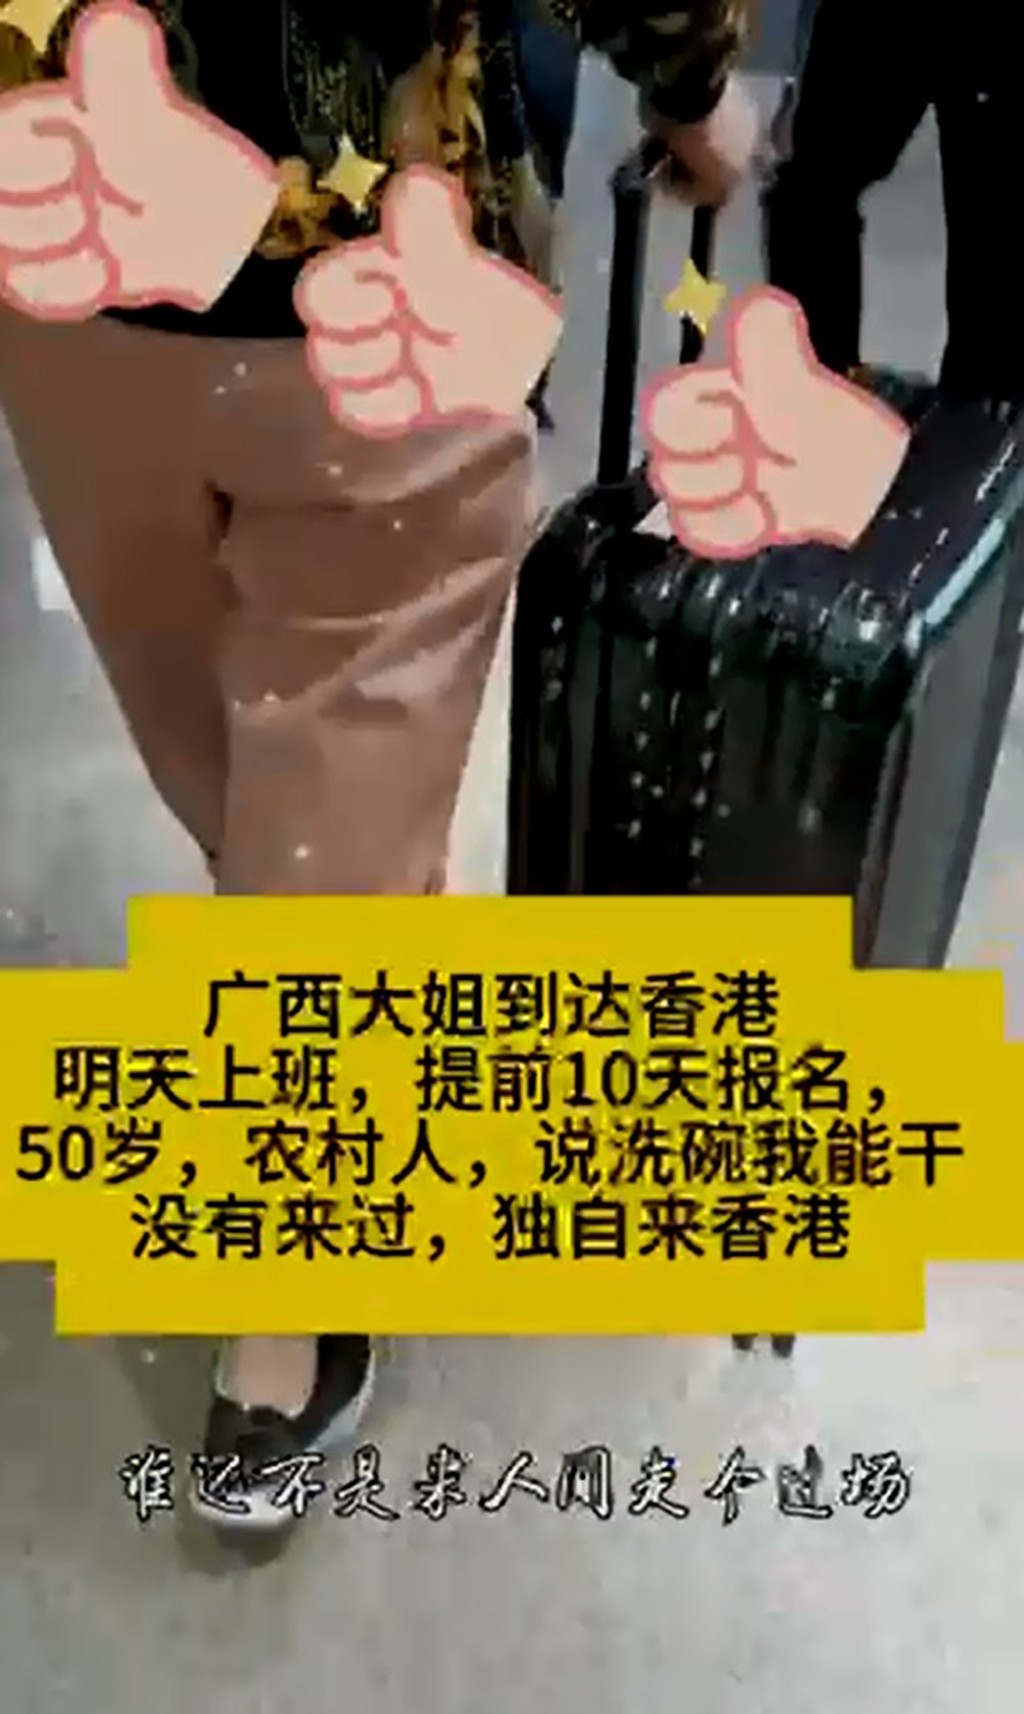 中介发放一名女子在香港街头的短片，称「广西大姐」赴港当洗碗工人。